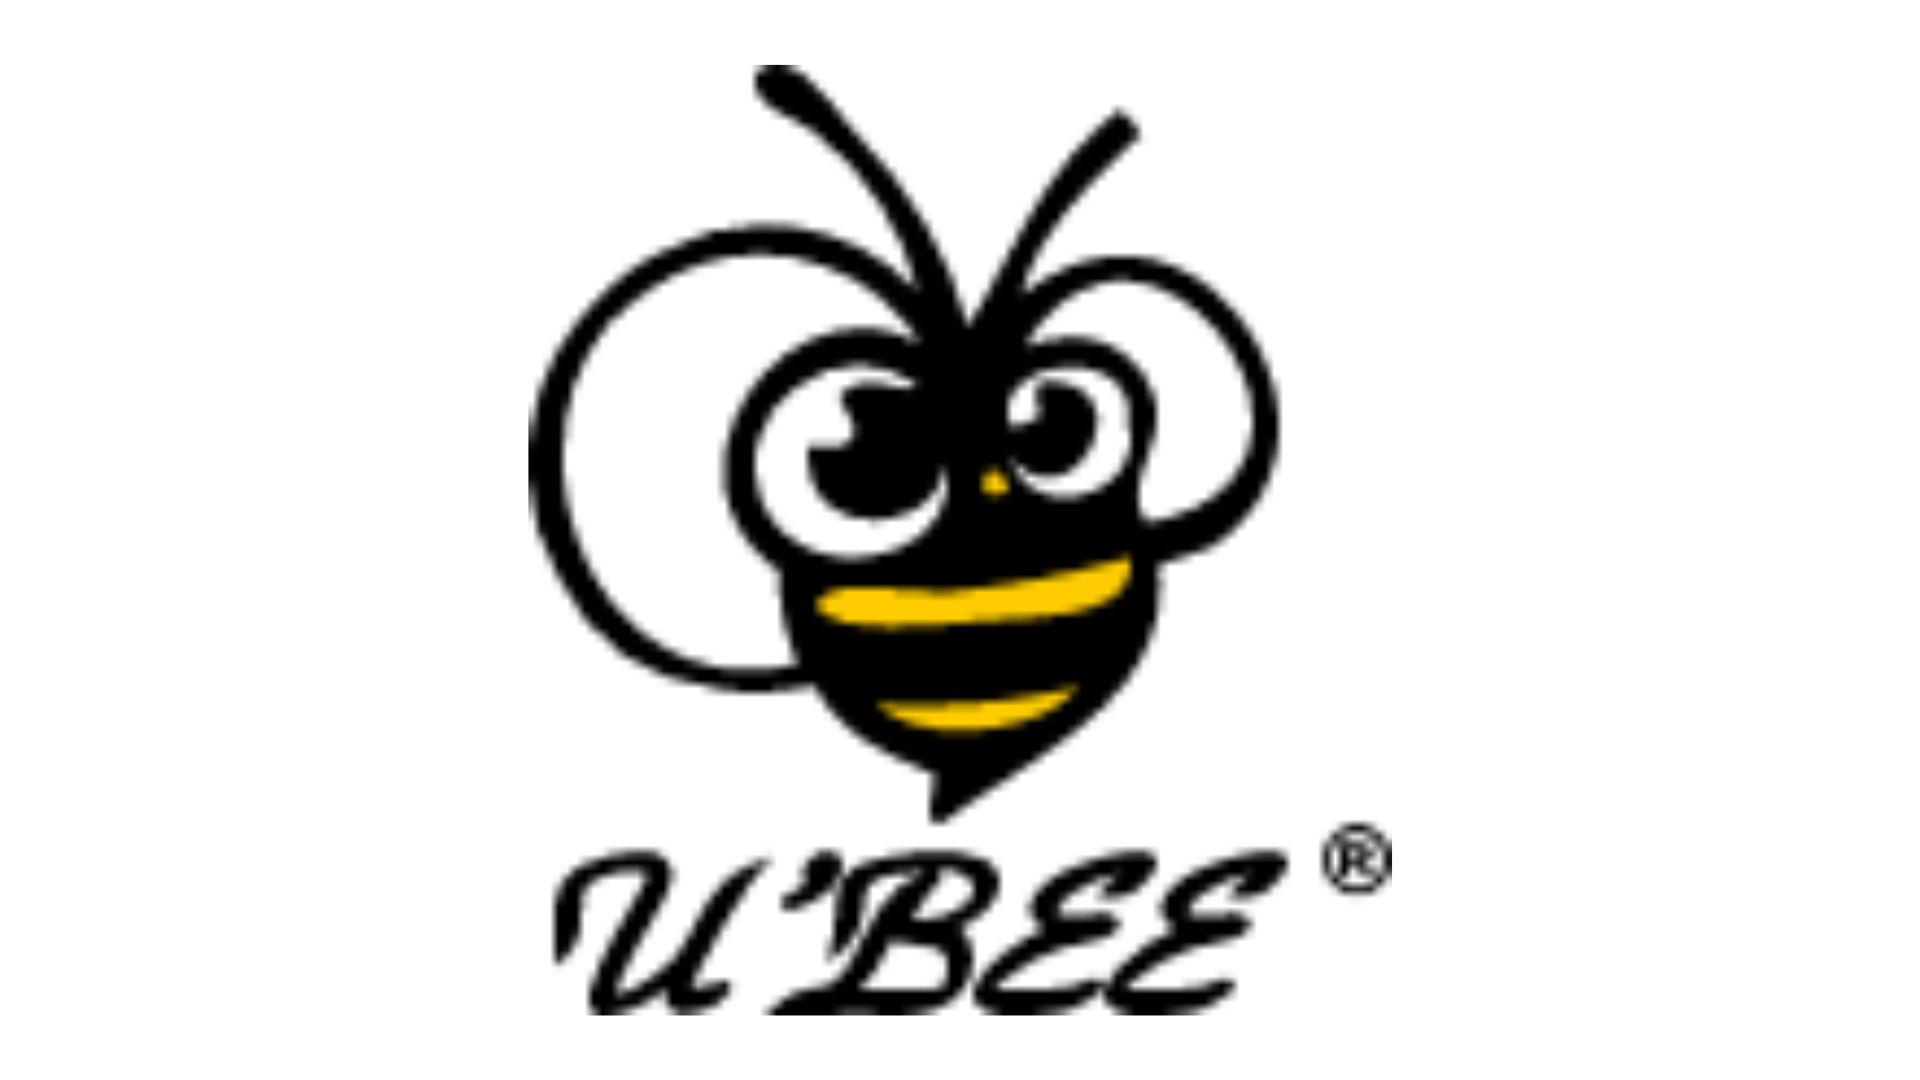 U Bee